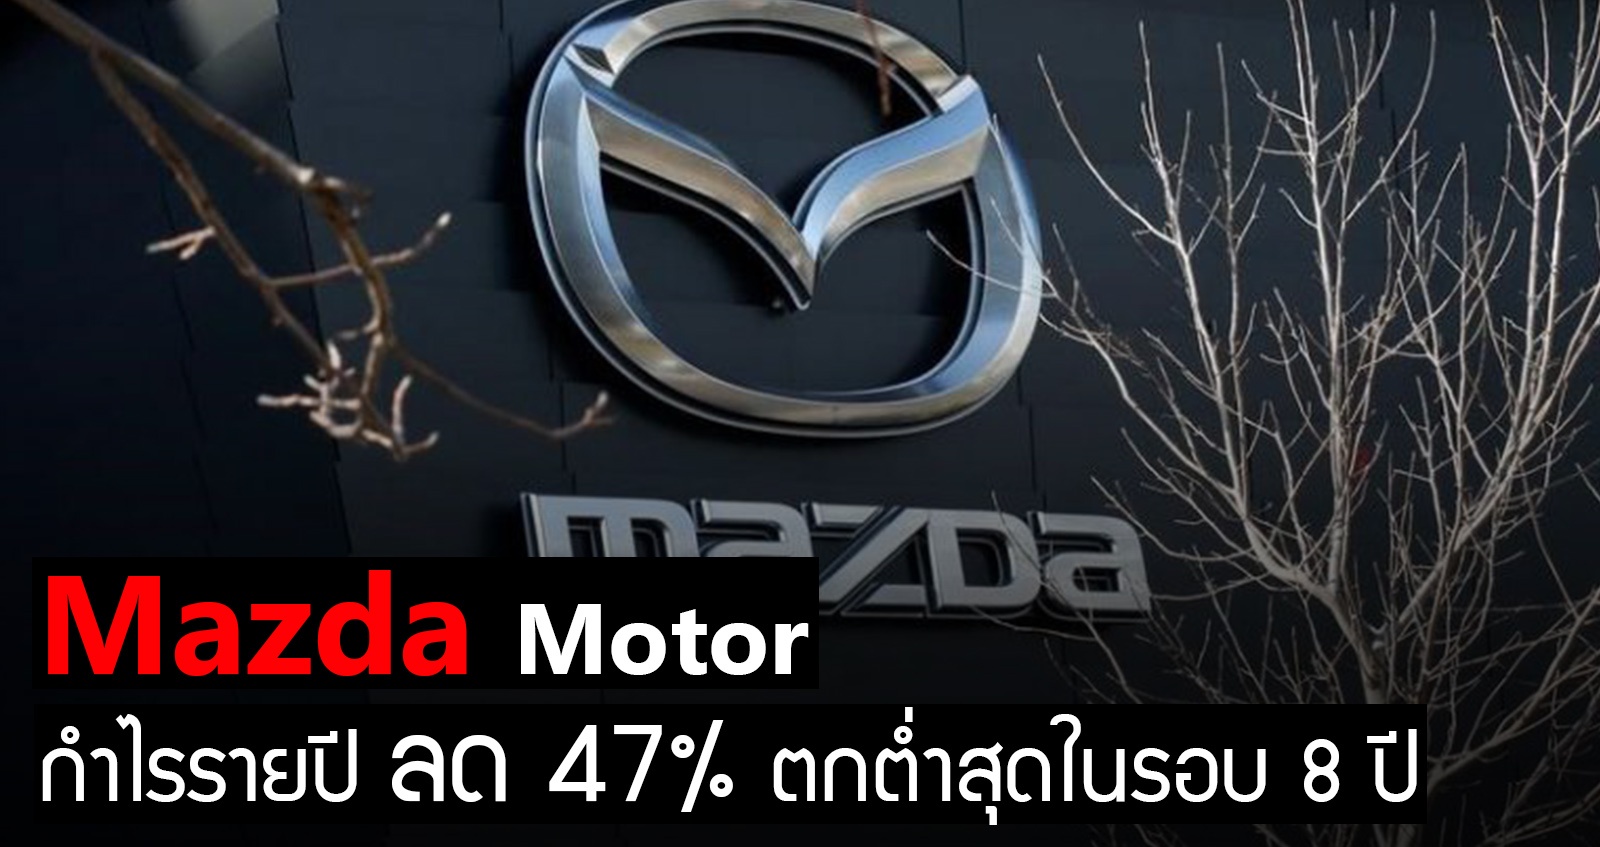 Mazda Motor กำไรรายปี ลด 47% ตกต่ำสุดในรอบ 8 ปี